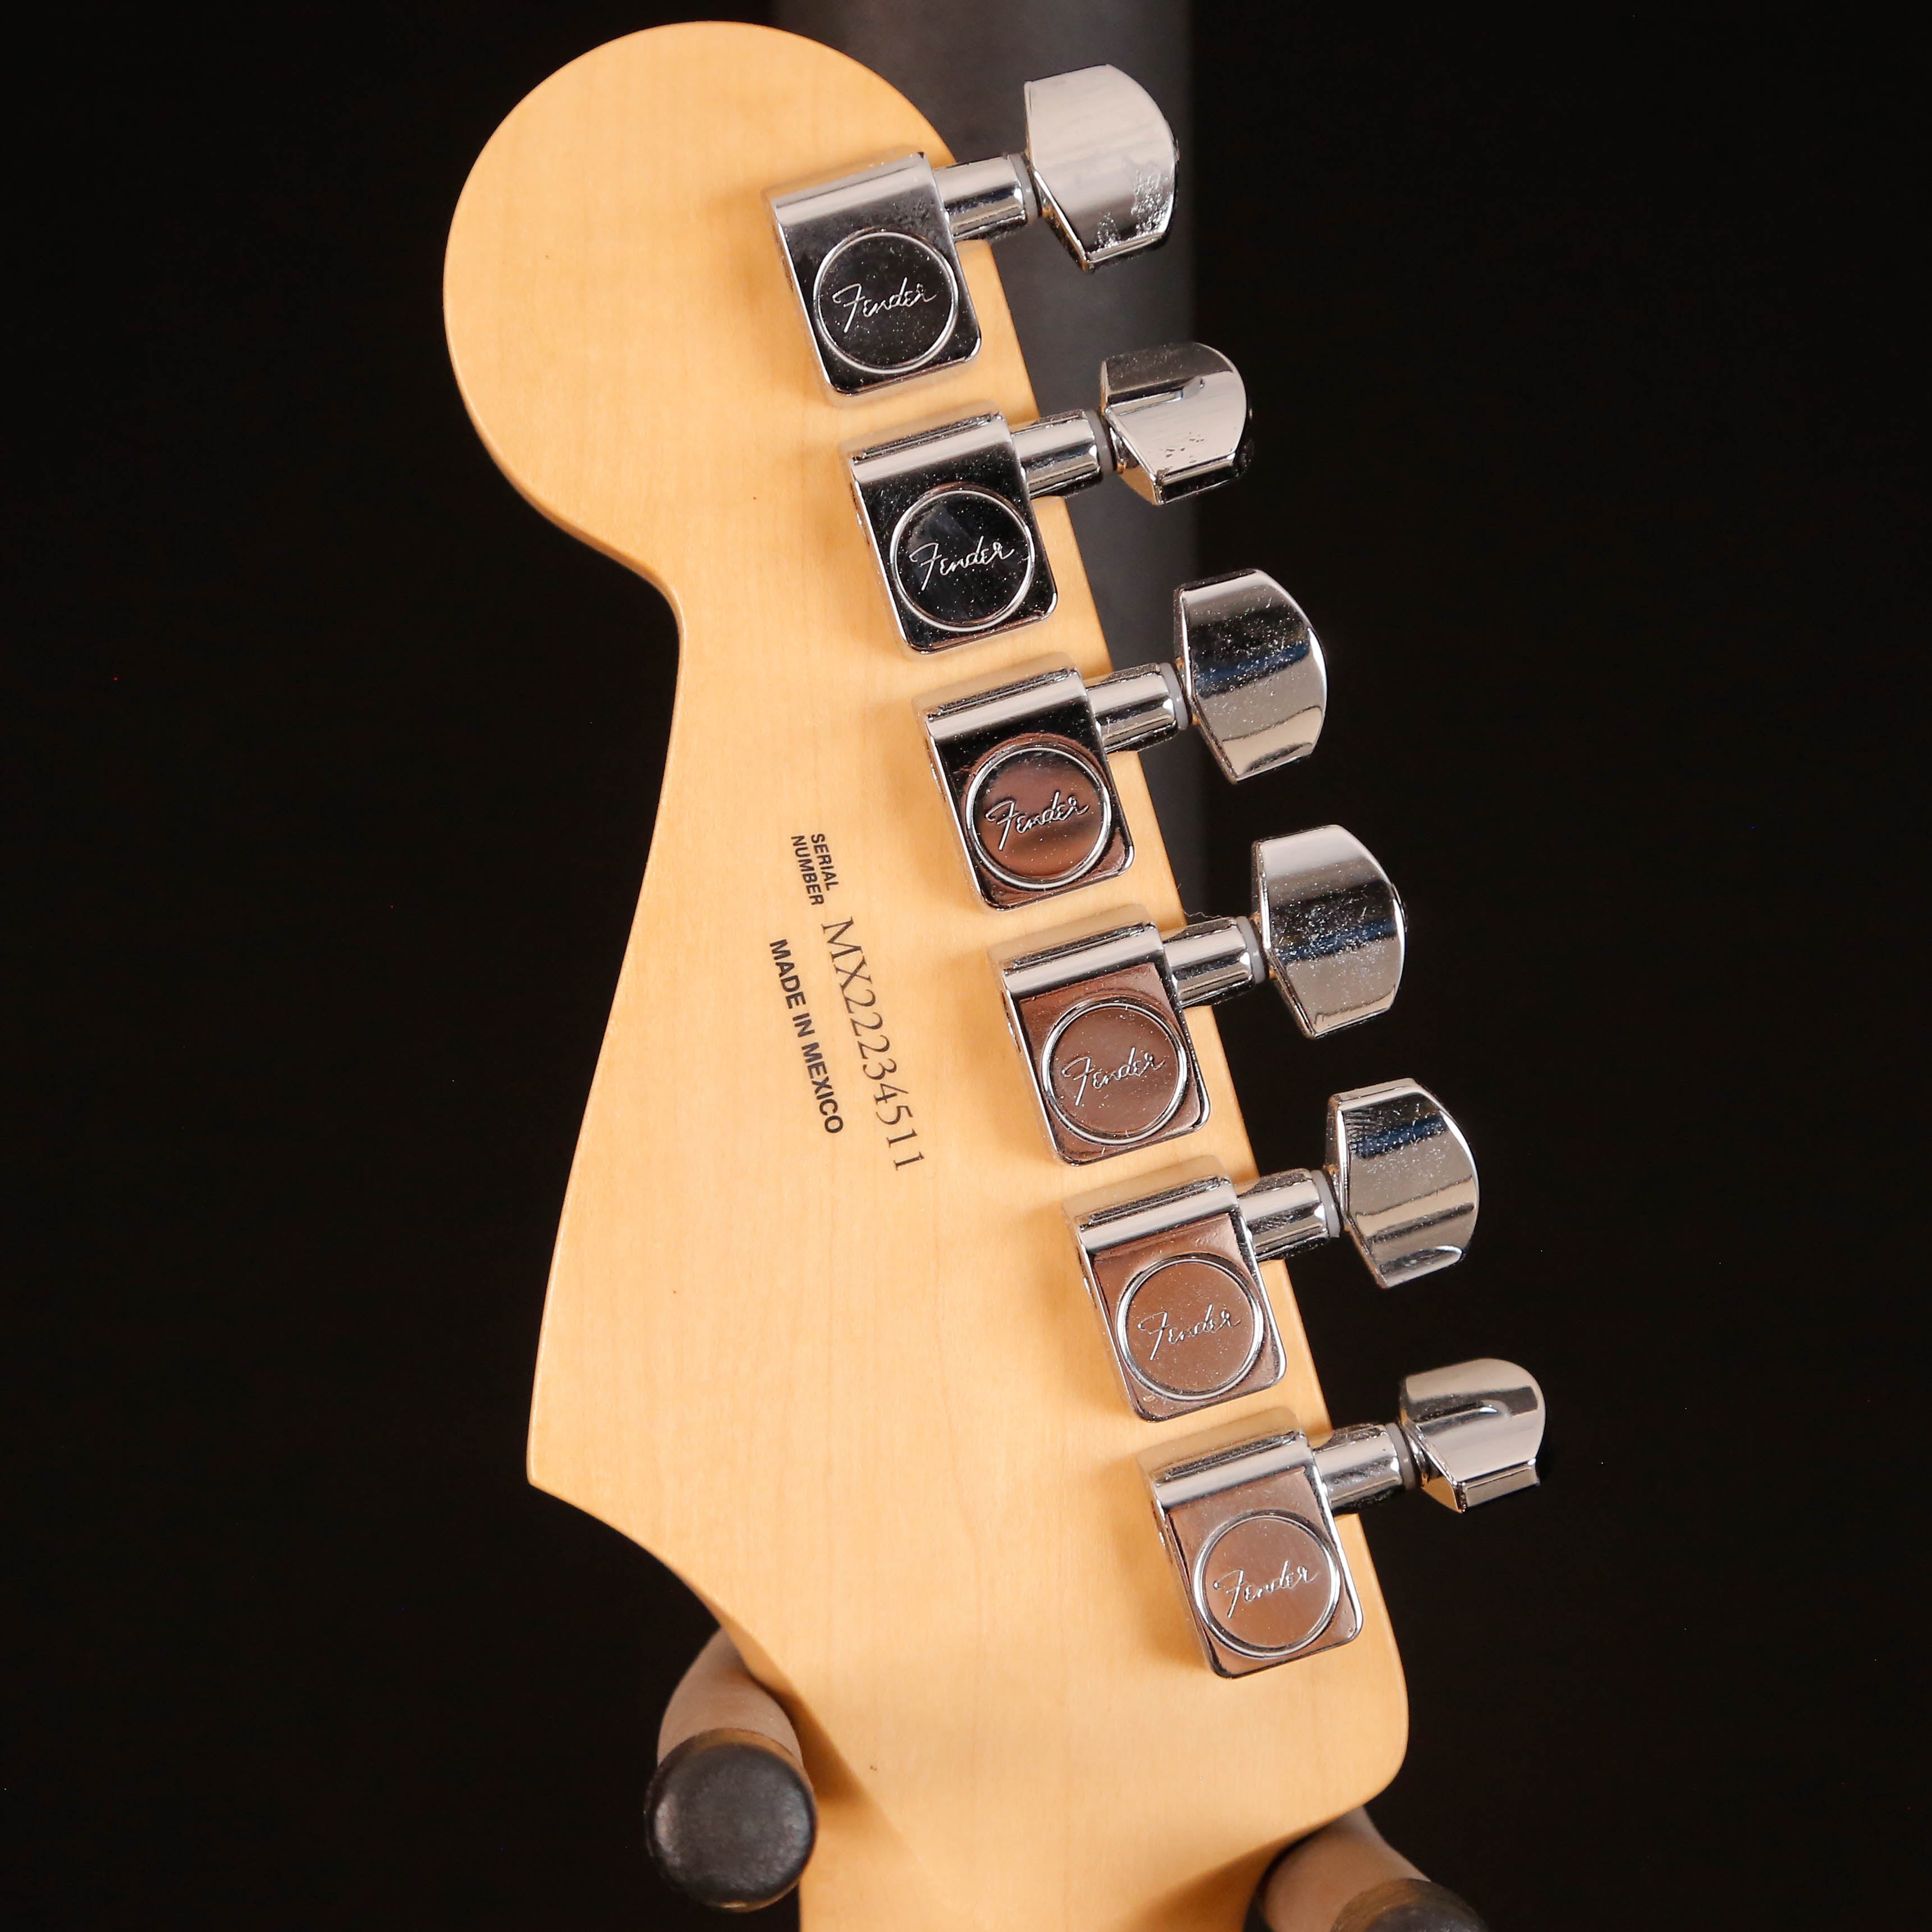 Fender Player Stratocaster HSS, Maple Fb, Buttercream